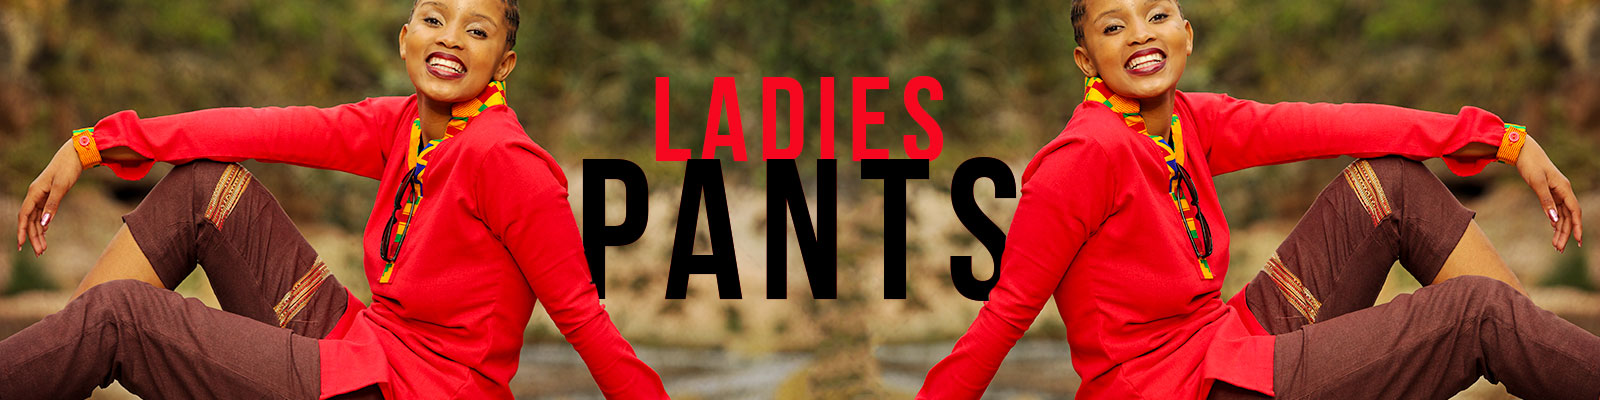 Ladies Pants